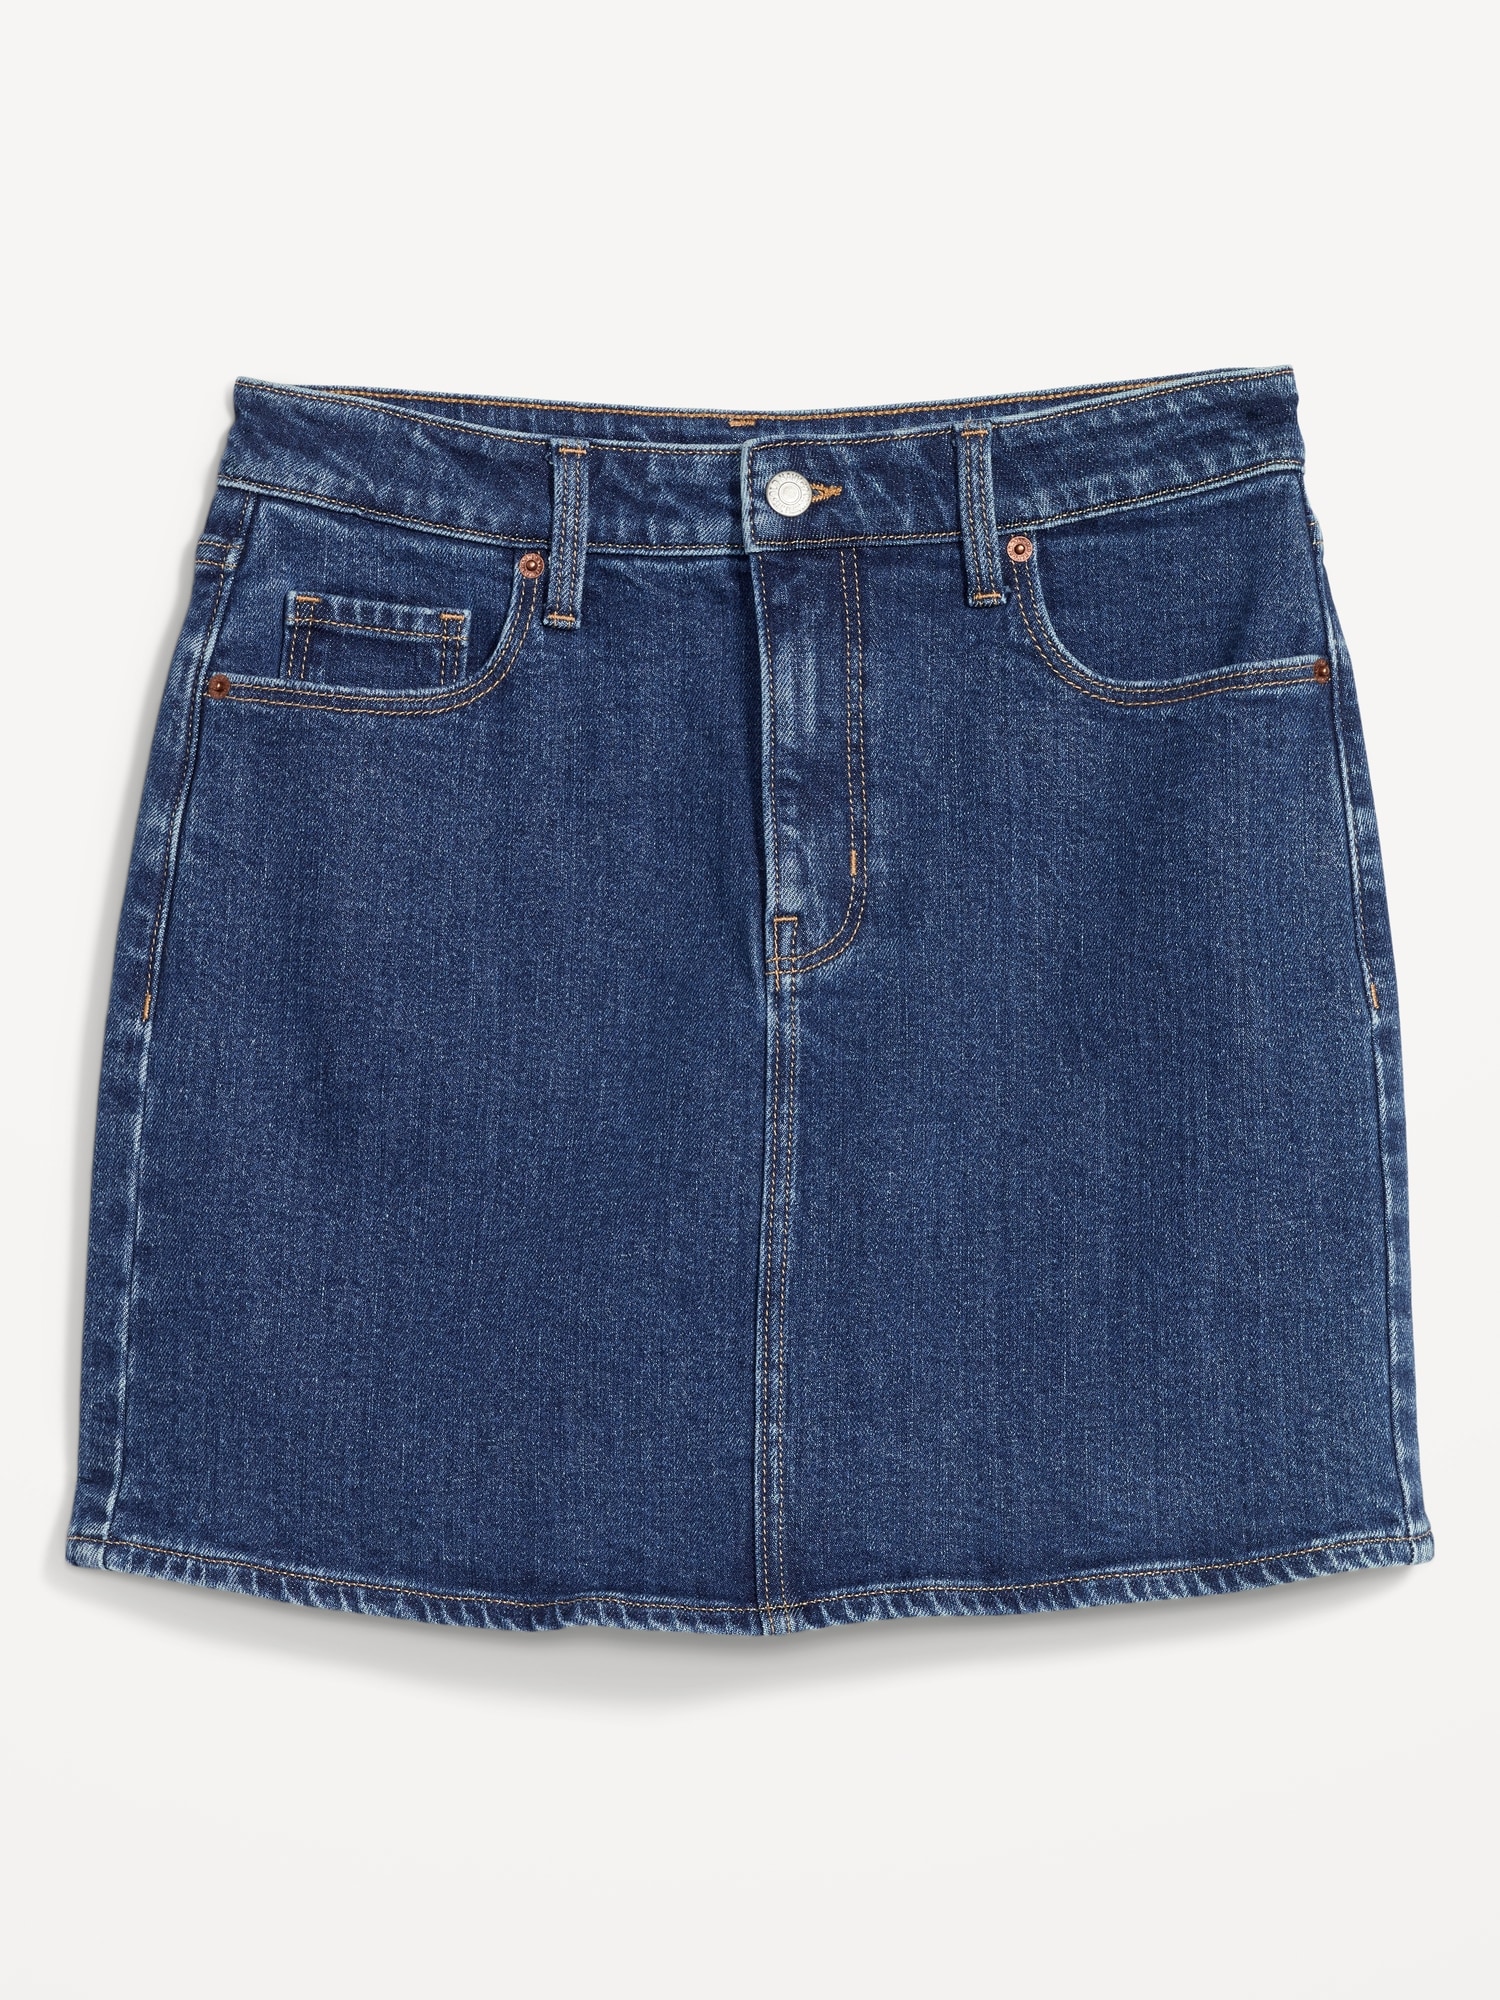 High-Waisted OG Straight Mini Jean Skirt for Women | Old Navy